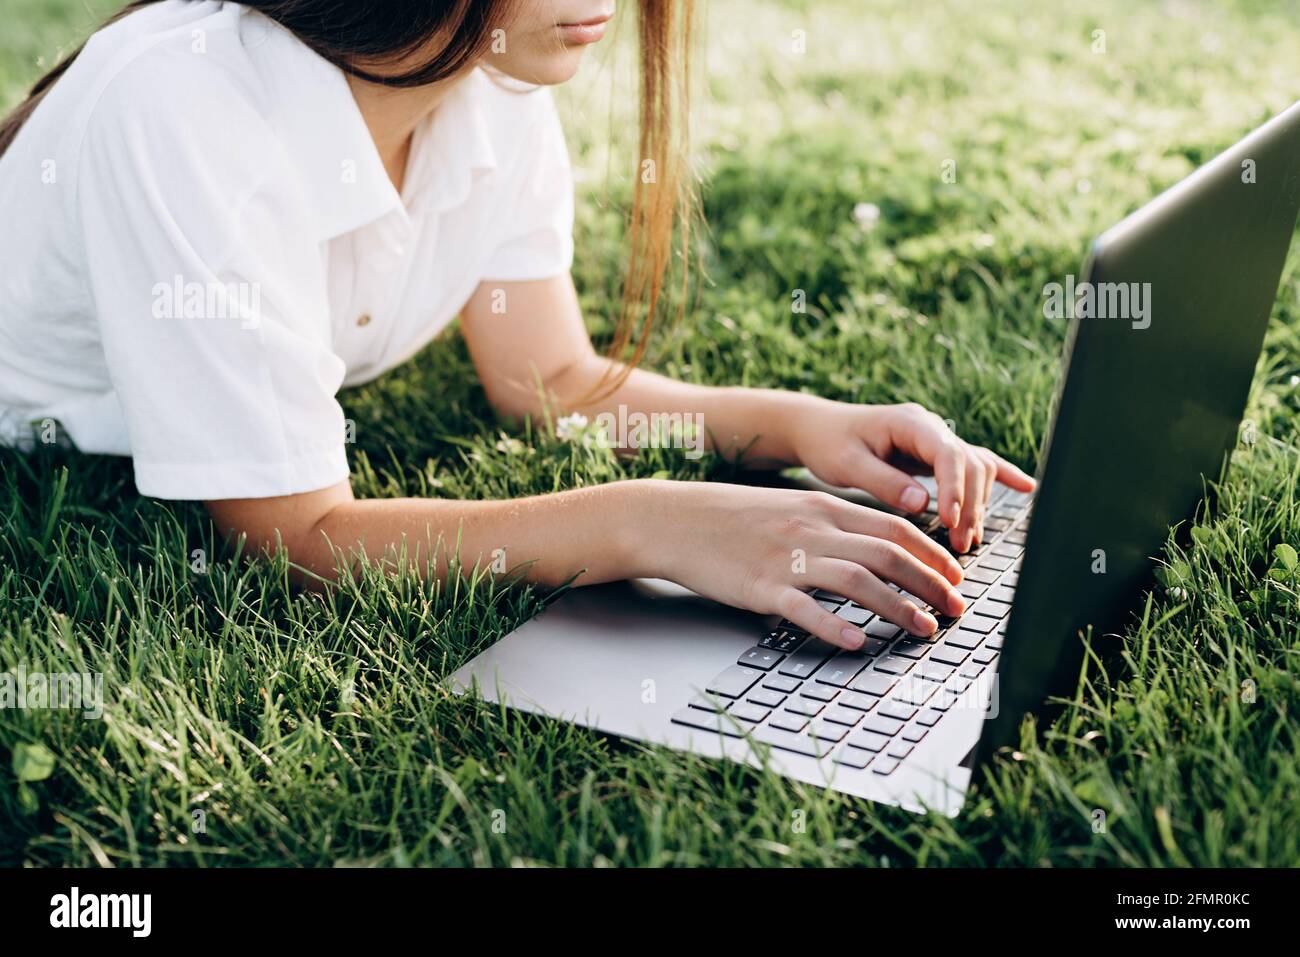 Fille étudiante avec ordinateur portable à l'extérieur. Femme couché sur l'herbe avec un ordinateur, surfer sur Internet ou se préparer aux examens. Technologie, éducation et re Banque D'Images